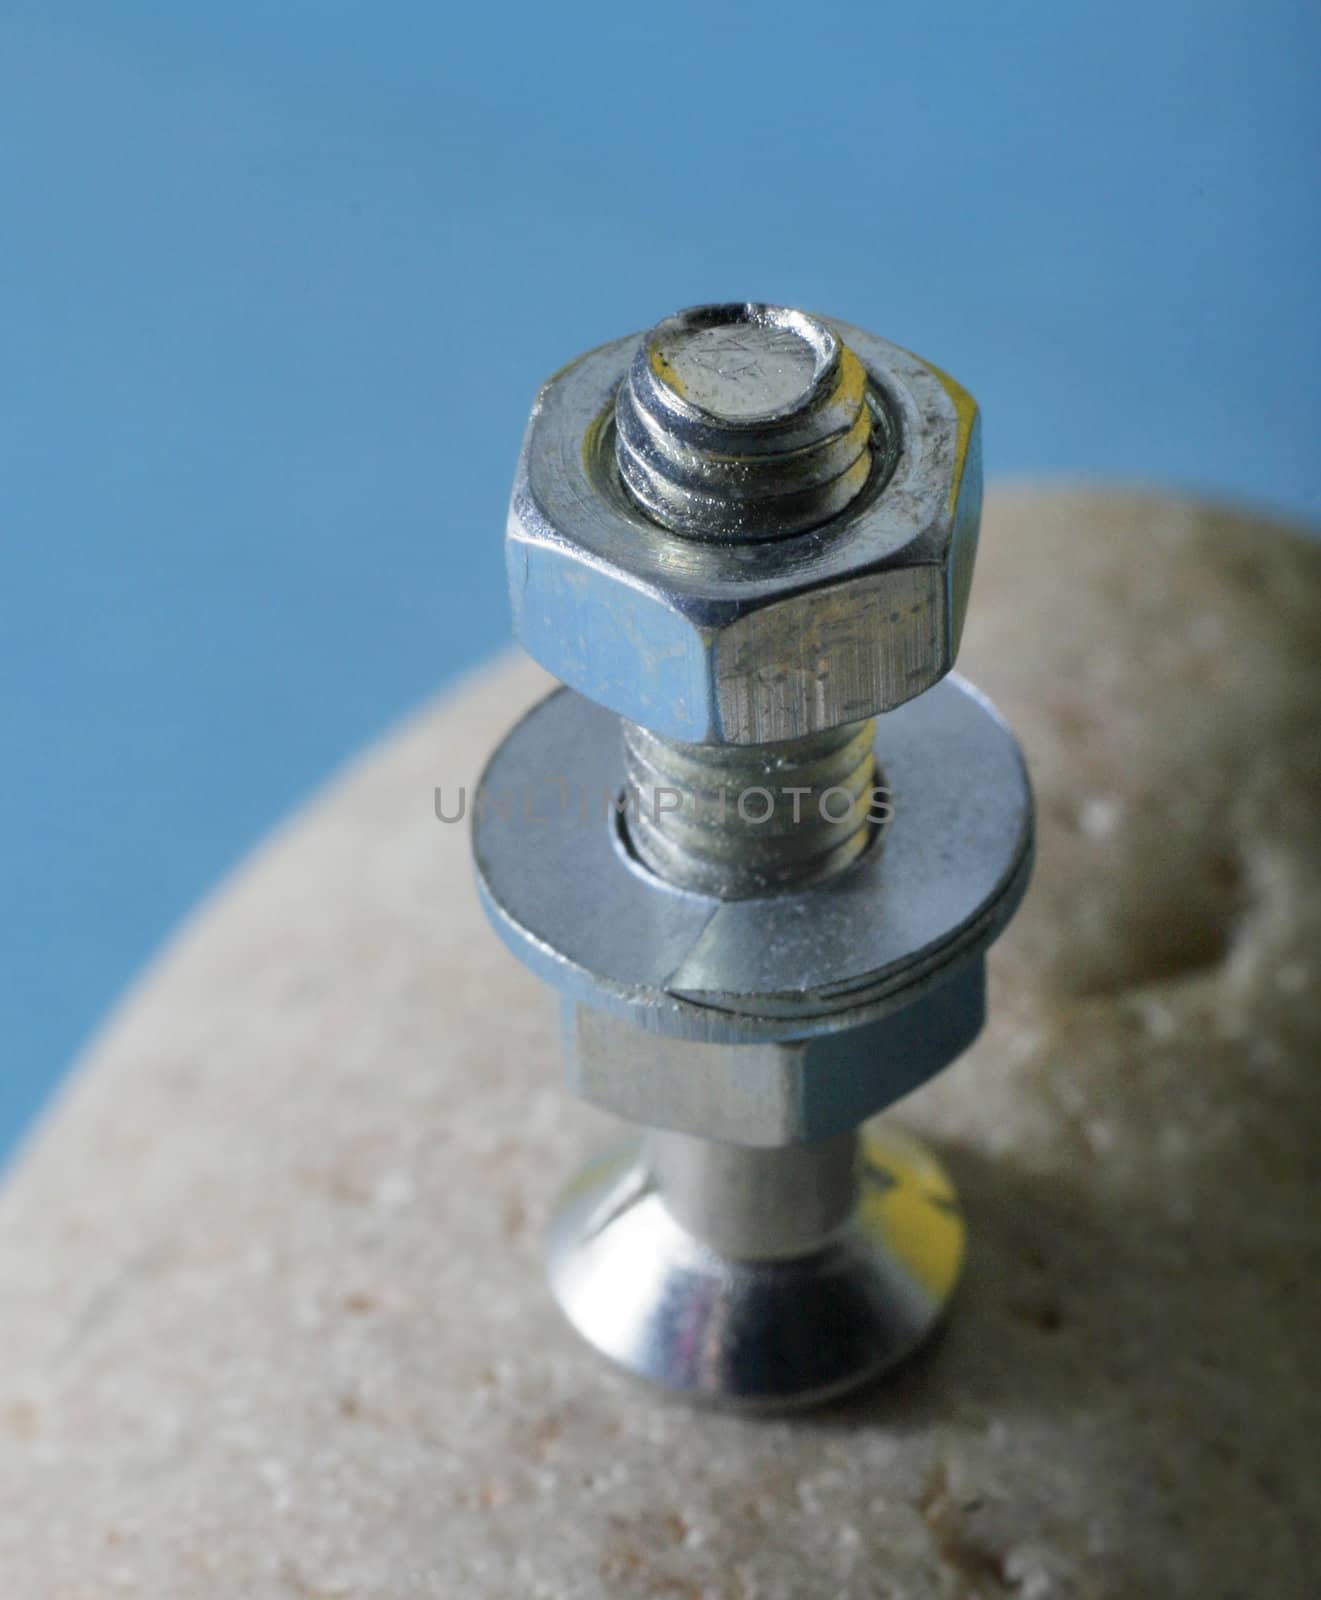 Closeup of a screw zinc covered